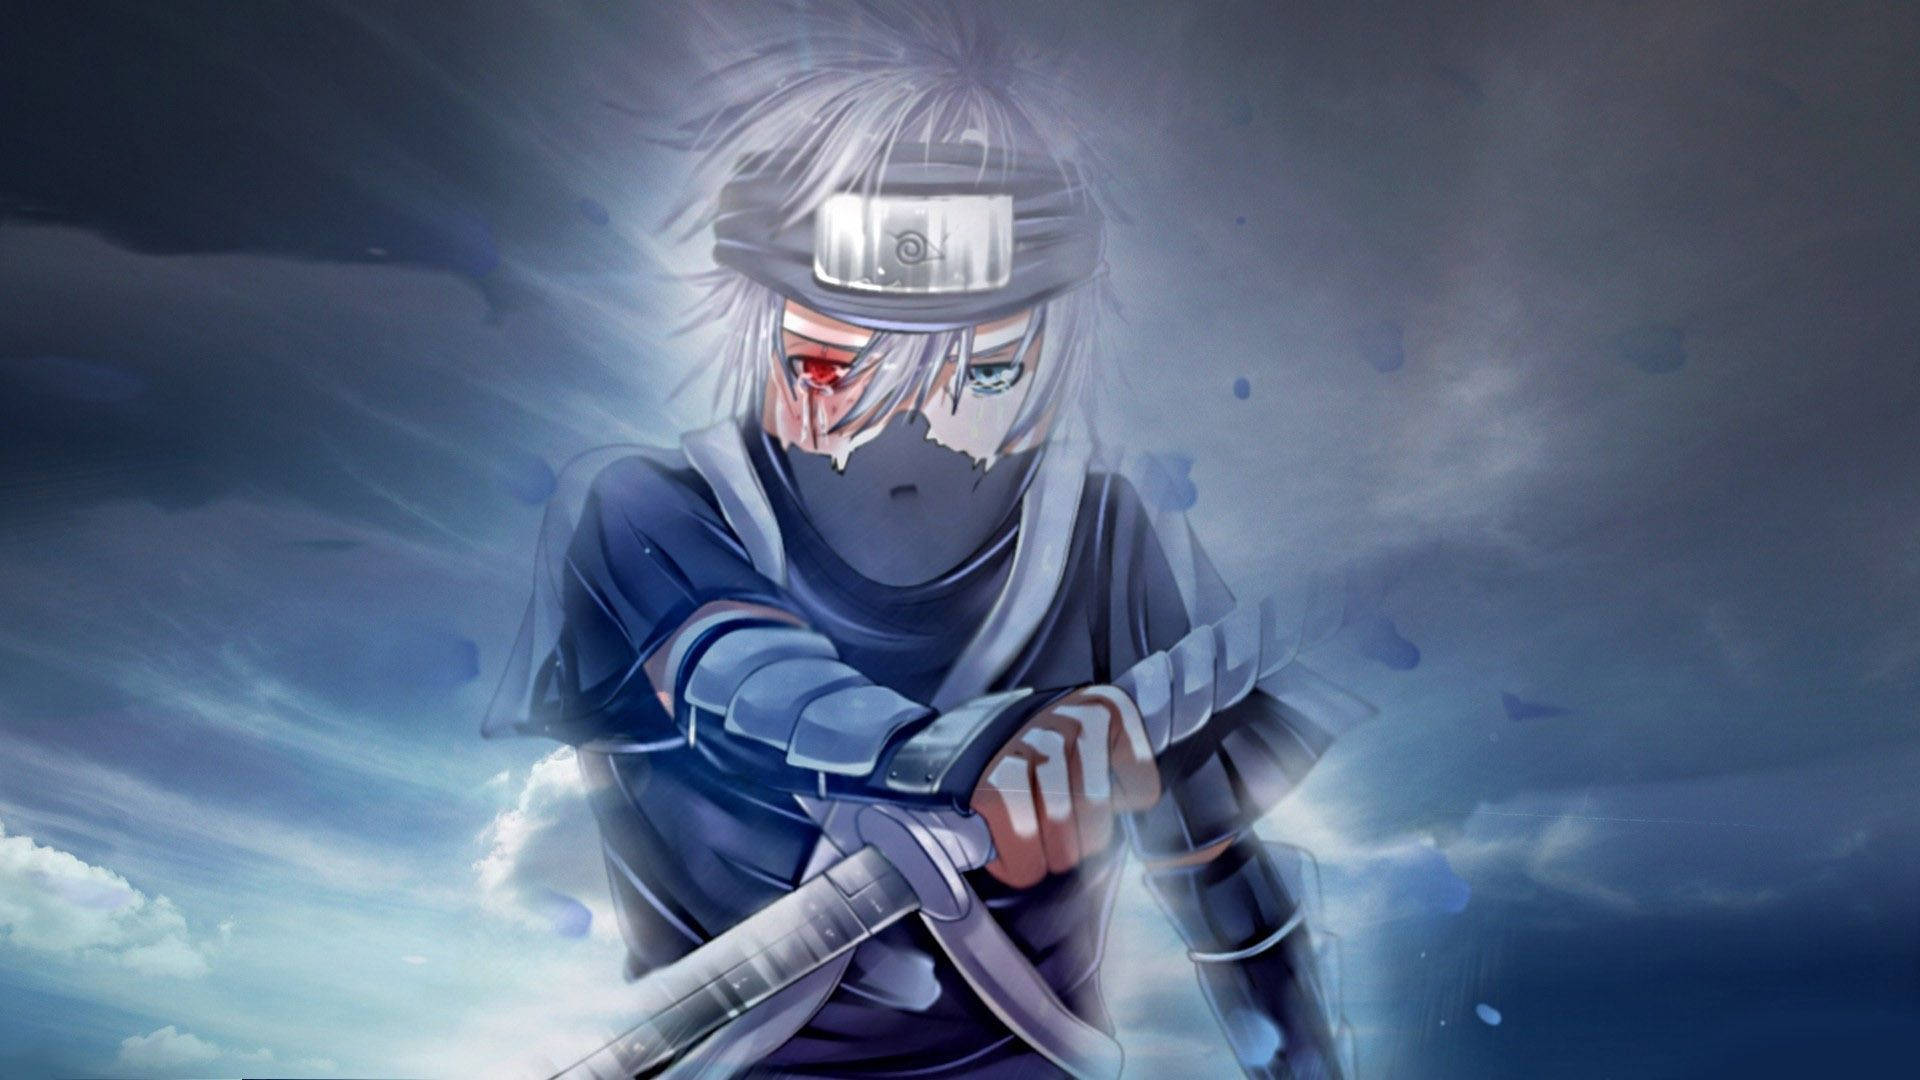 The legendary ninja, Kakashi Hatake, with his sword and lightningpower Wallpaper